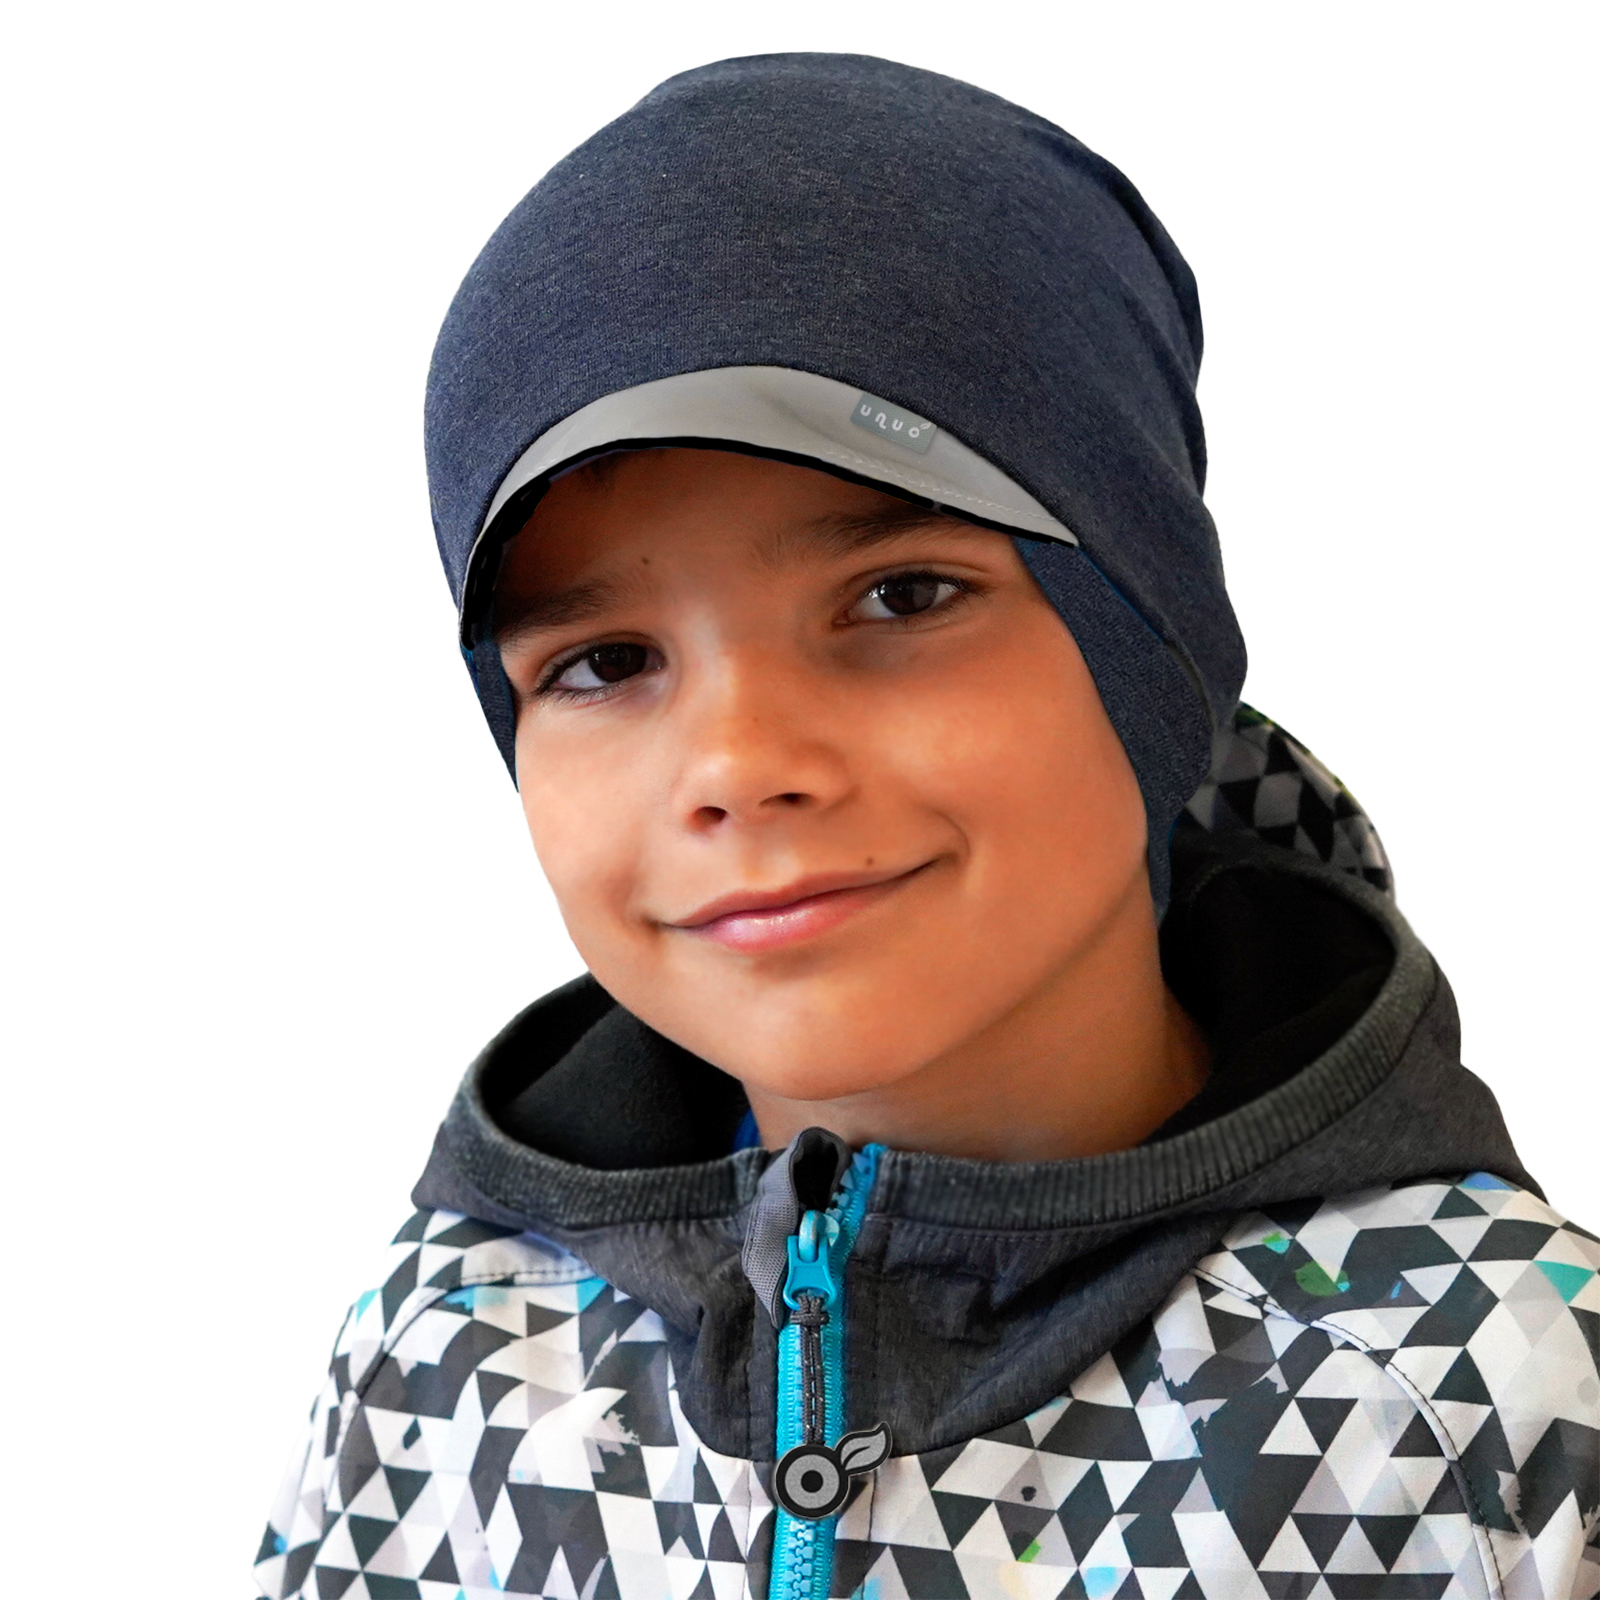 Unuo Dětská čepice z teplákoviny s reflexním kšiltem spadená, Jeans temný, Černá, L (53 - 56 cm)